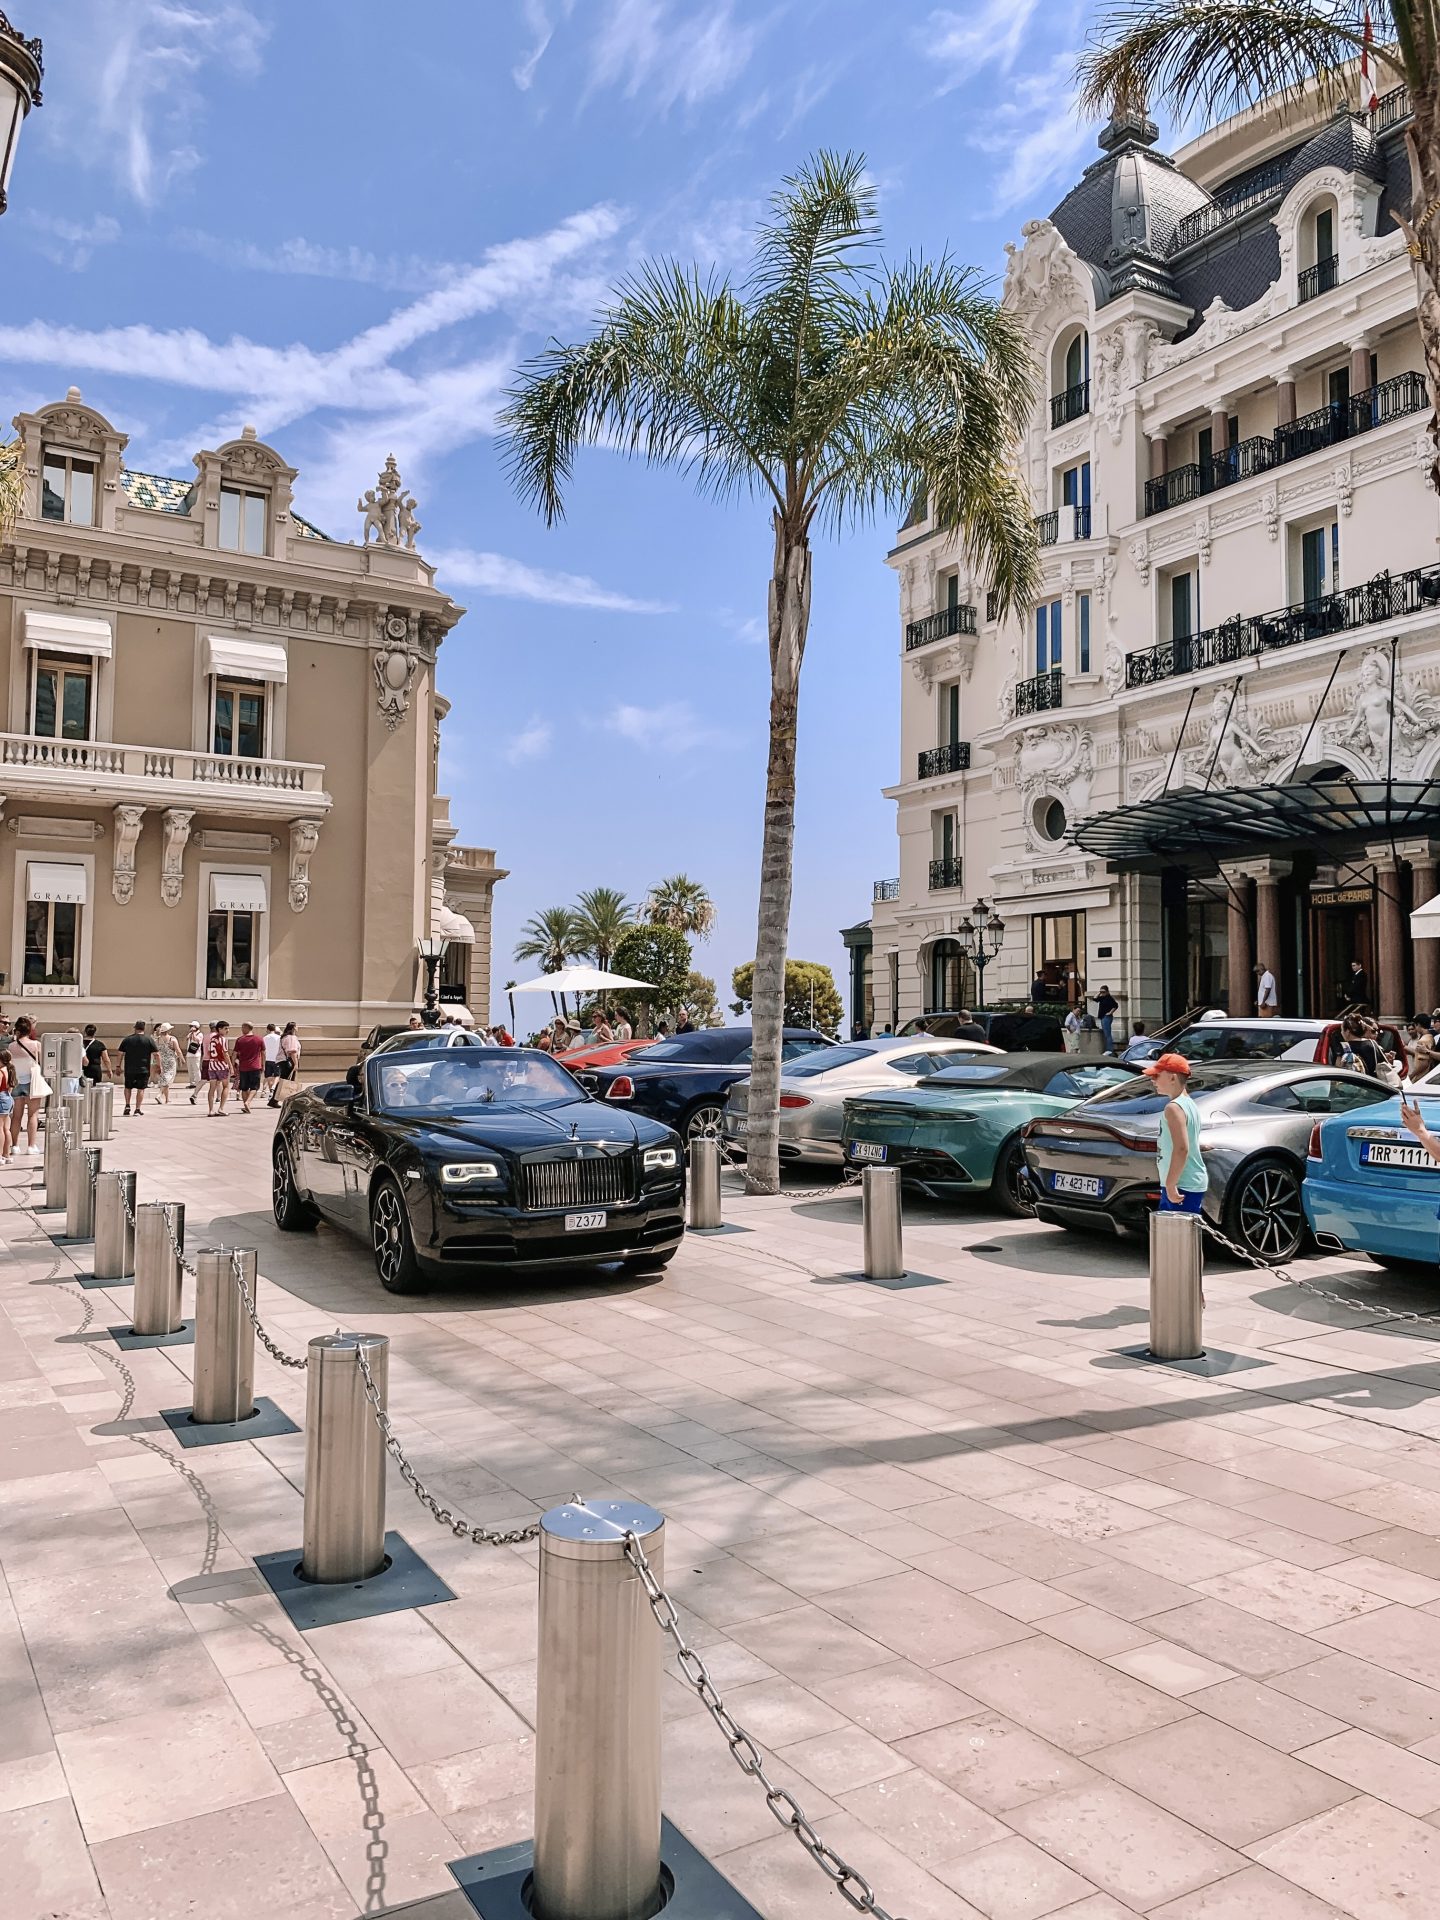 The Casino de Monte Carlo, Monaco